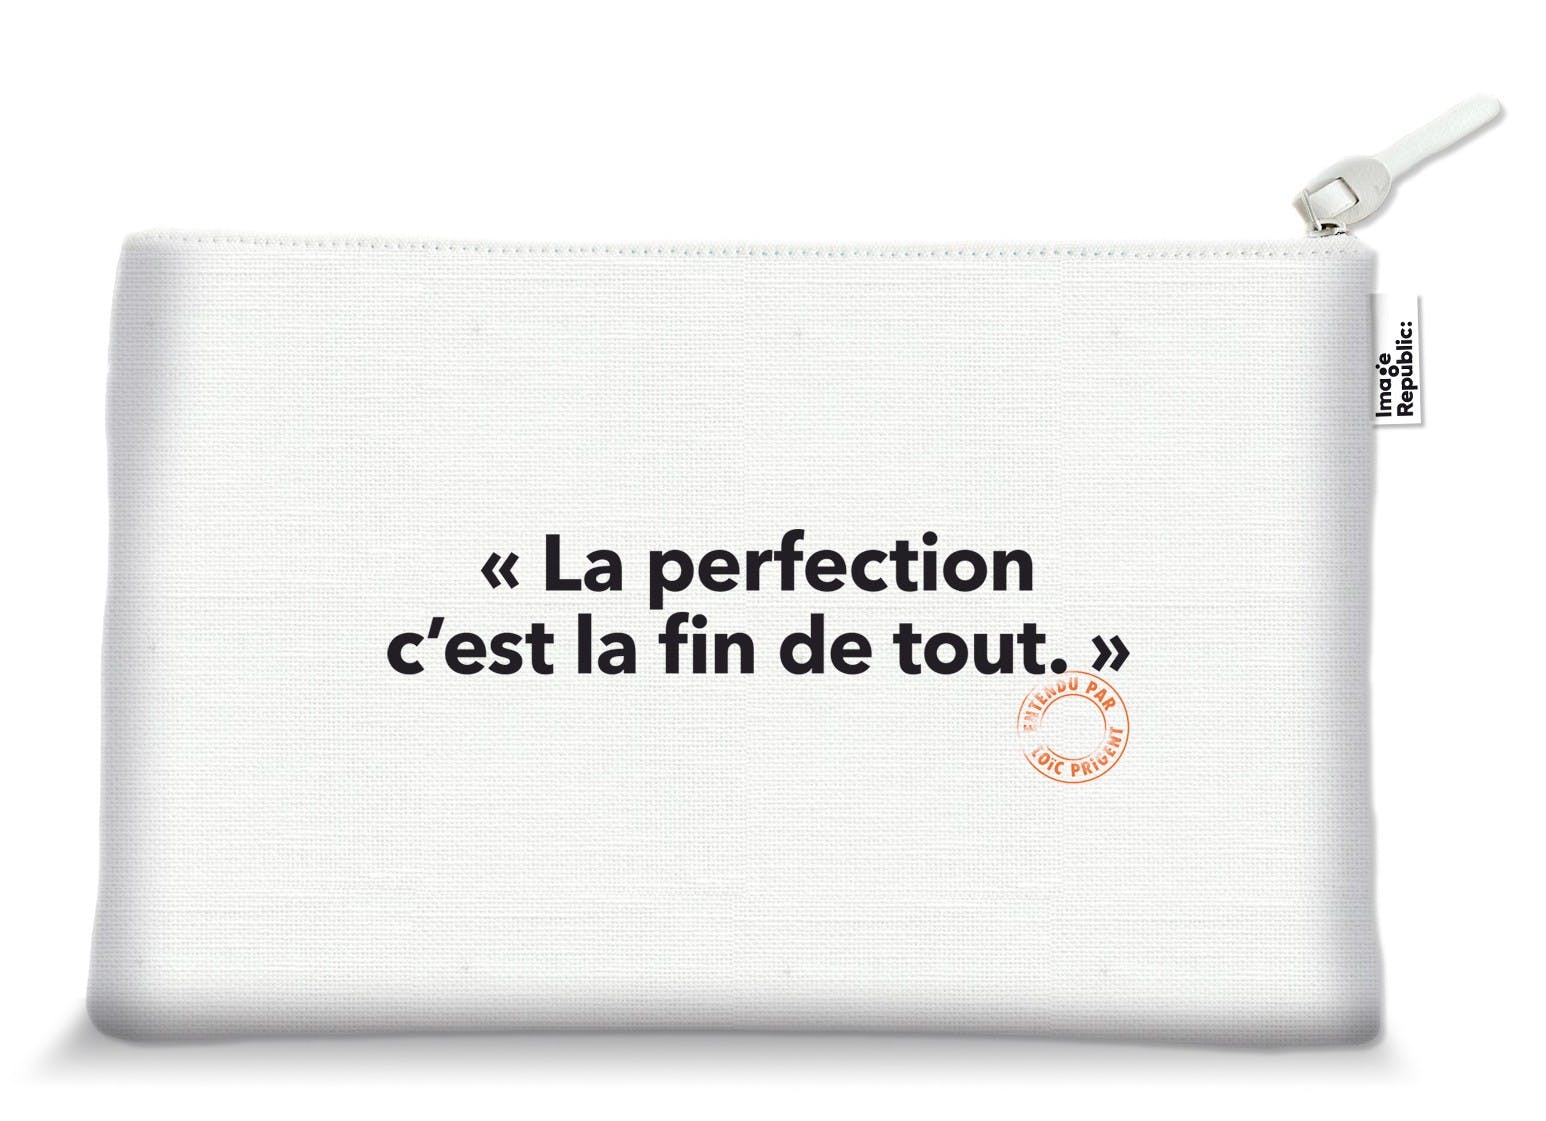 La Perfection... - Trousse 15x25 cm Trousses de toilette Image Republic 